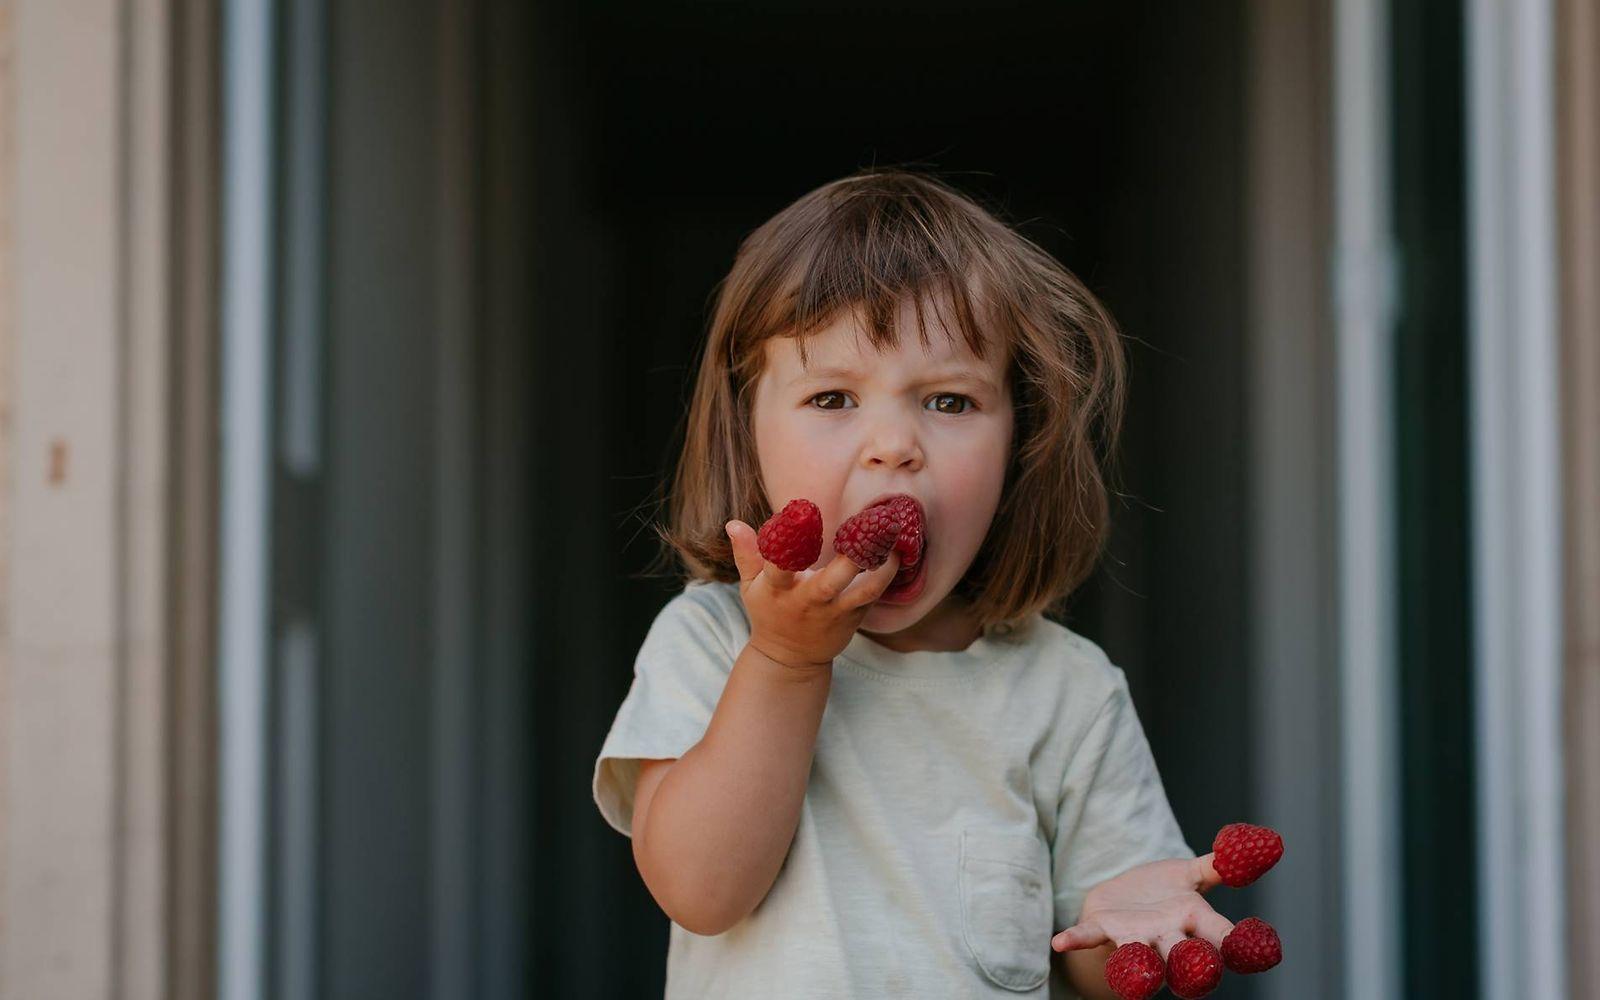 Gesunde Ernährung: Kleines Mädchen isst Himbeeren, die auf ihren Fingern stecken